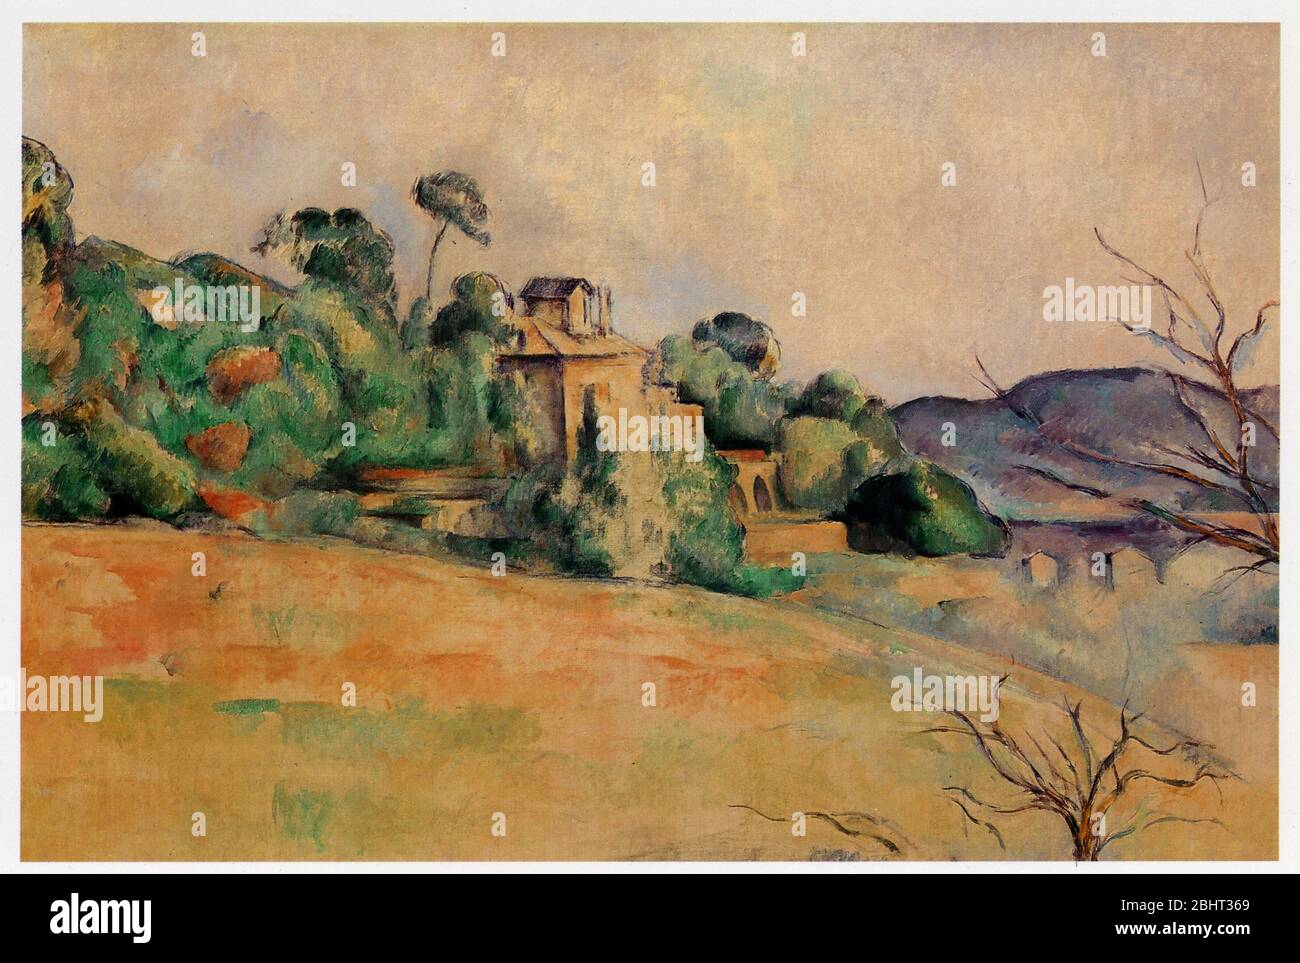 Paul Cézanne (1839-1906). Paysage du Midi. Huile sur toile. 1885-1887 Stockfoto